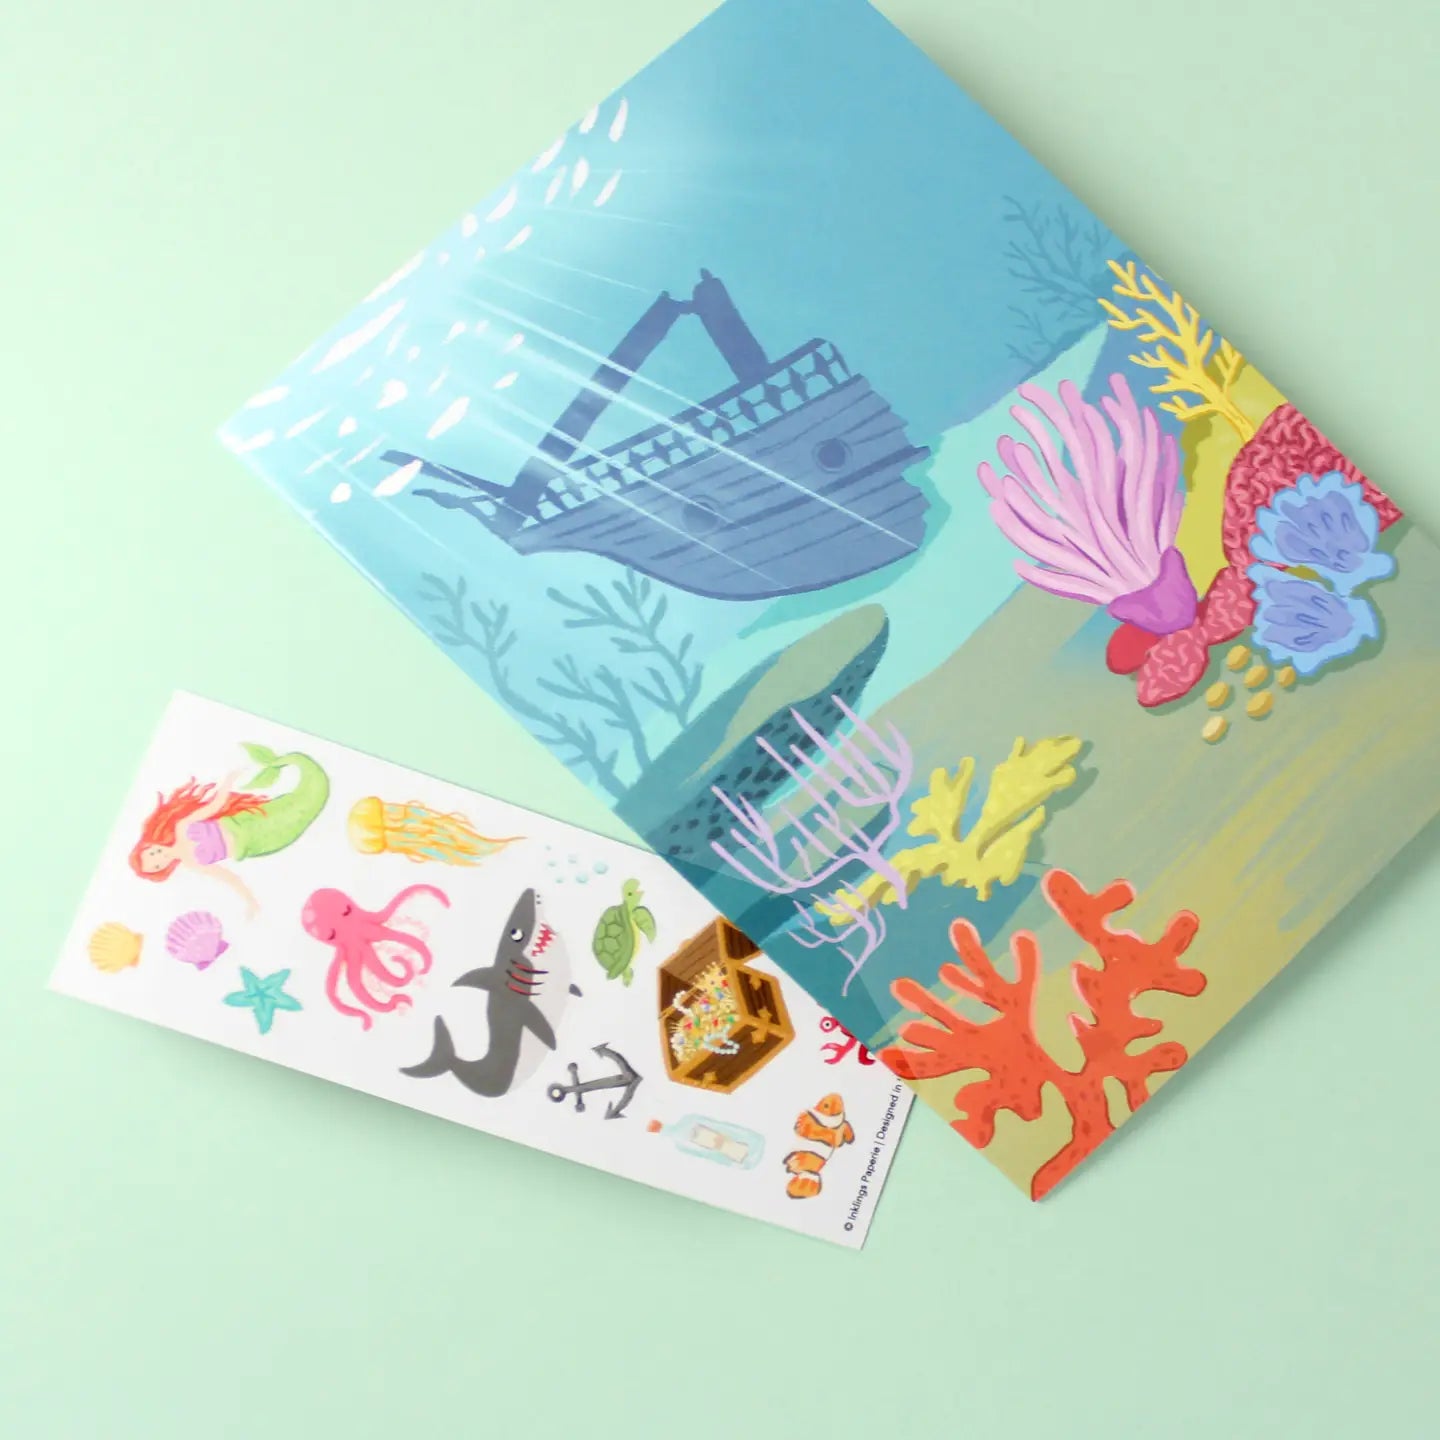 Sticker Scene Card - Under the Sea